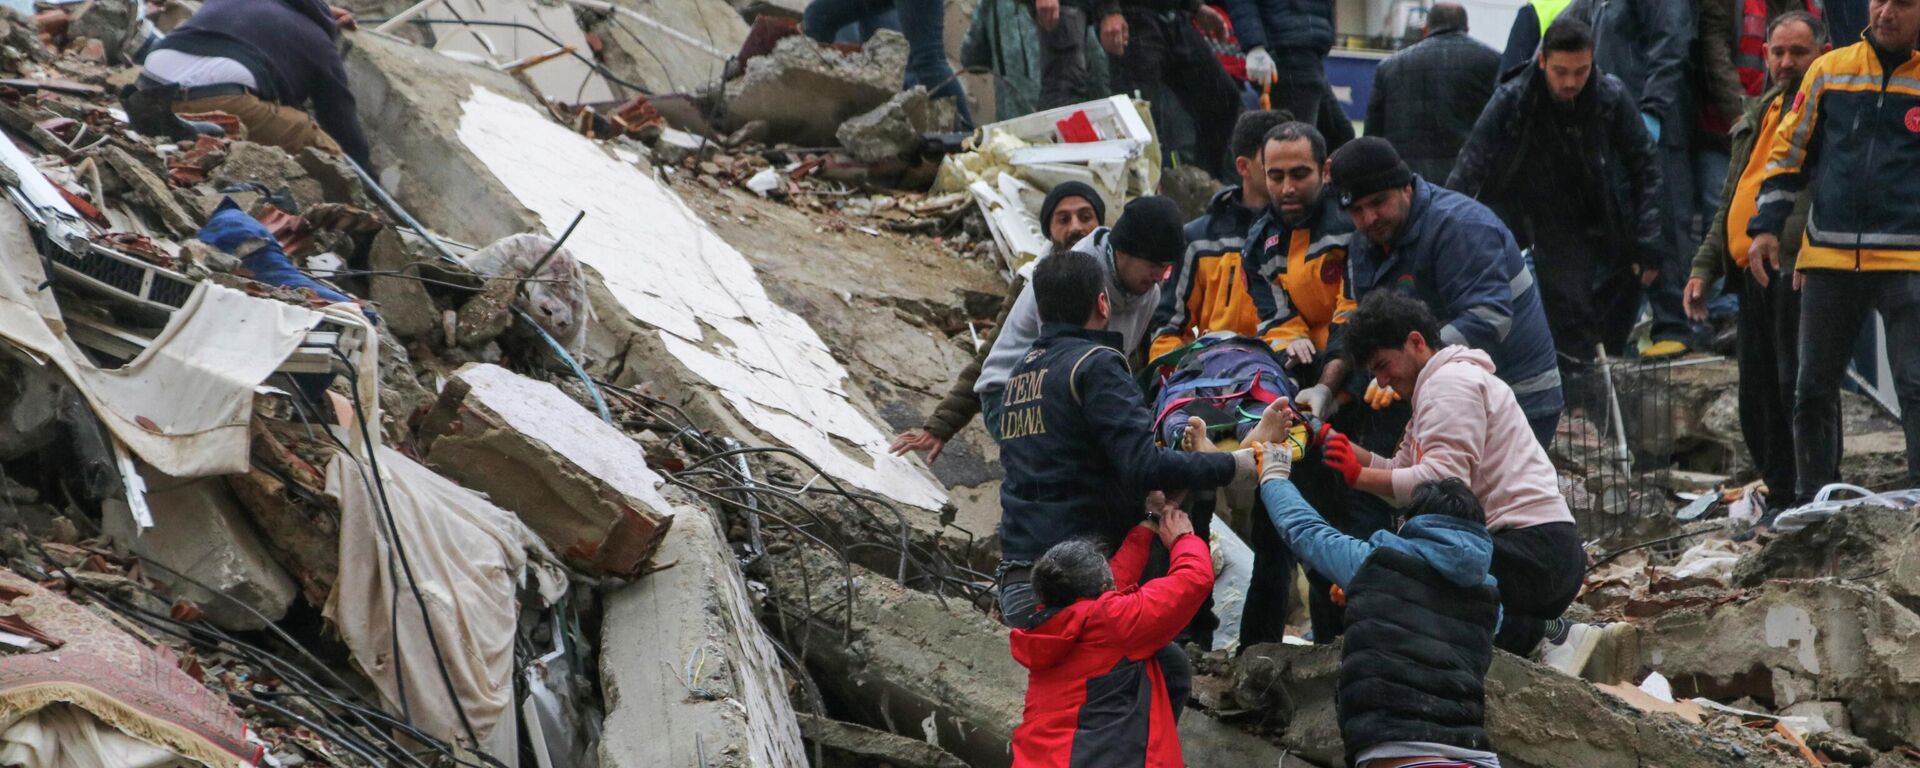 Люди и спасатели выносят пострадавшего из рухнувшего здания в Адане, Турция - Sputnik Кыргызстан, 1920, 06.02.2023